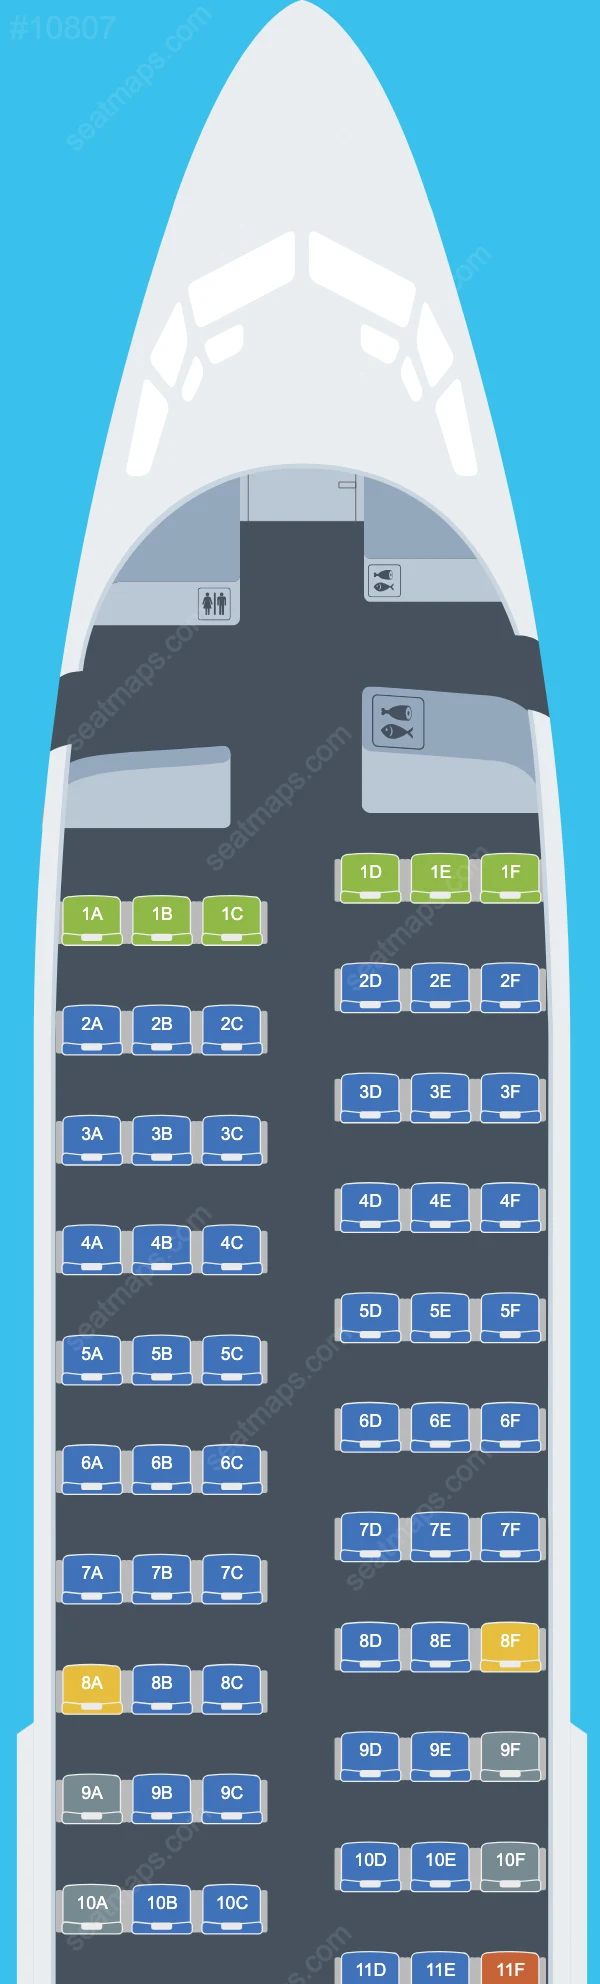 Air Serbia Boeing 737 Seat Maps 737-700